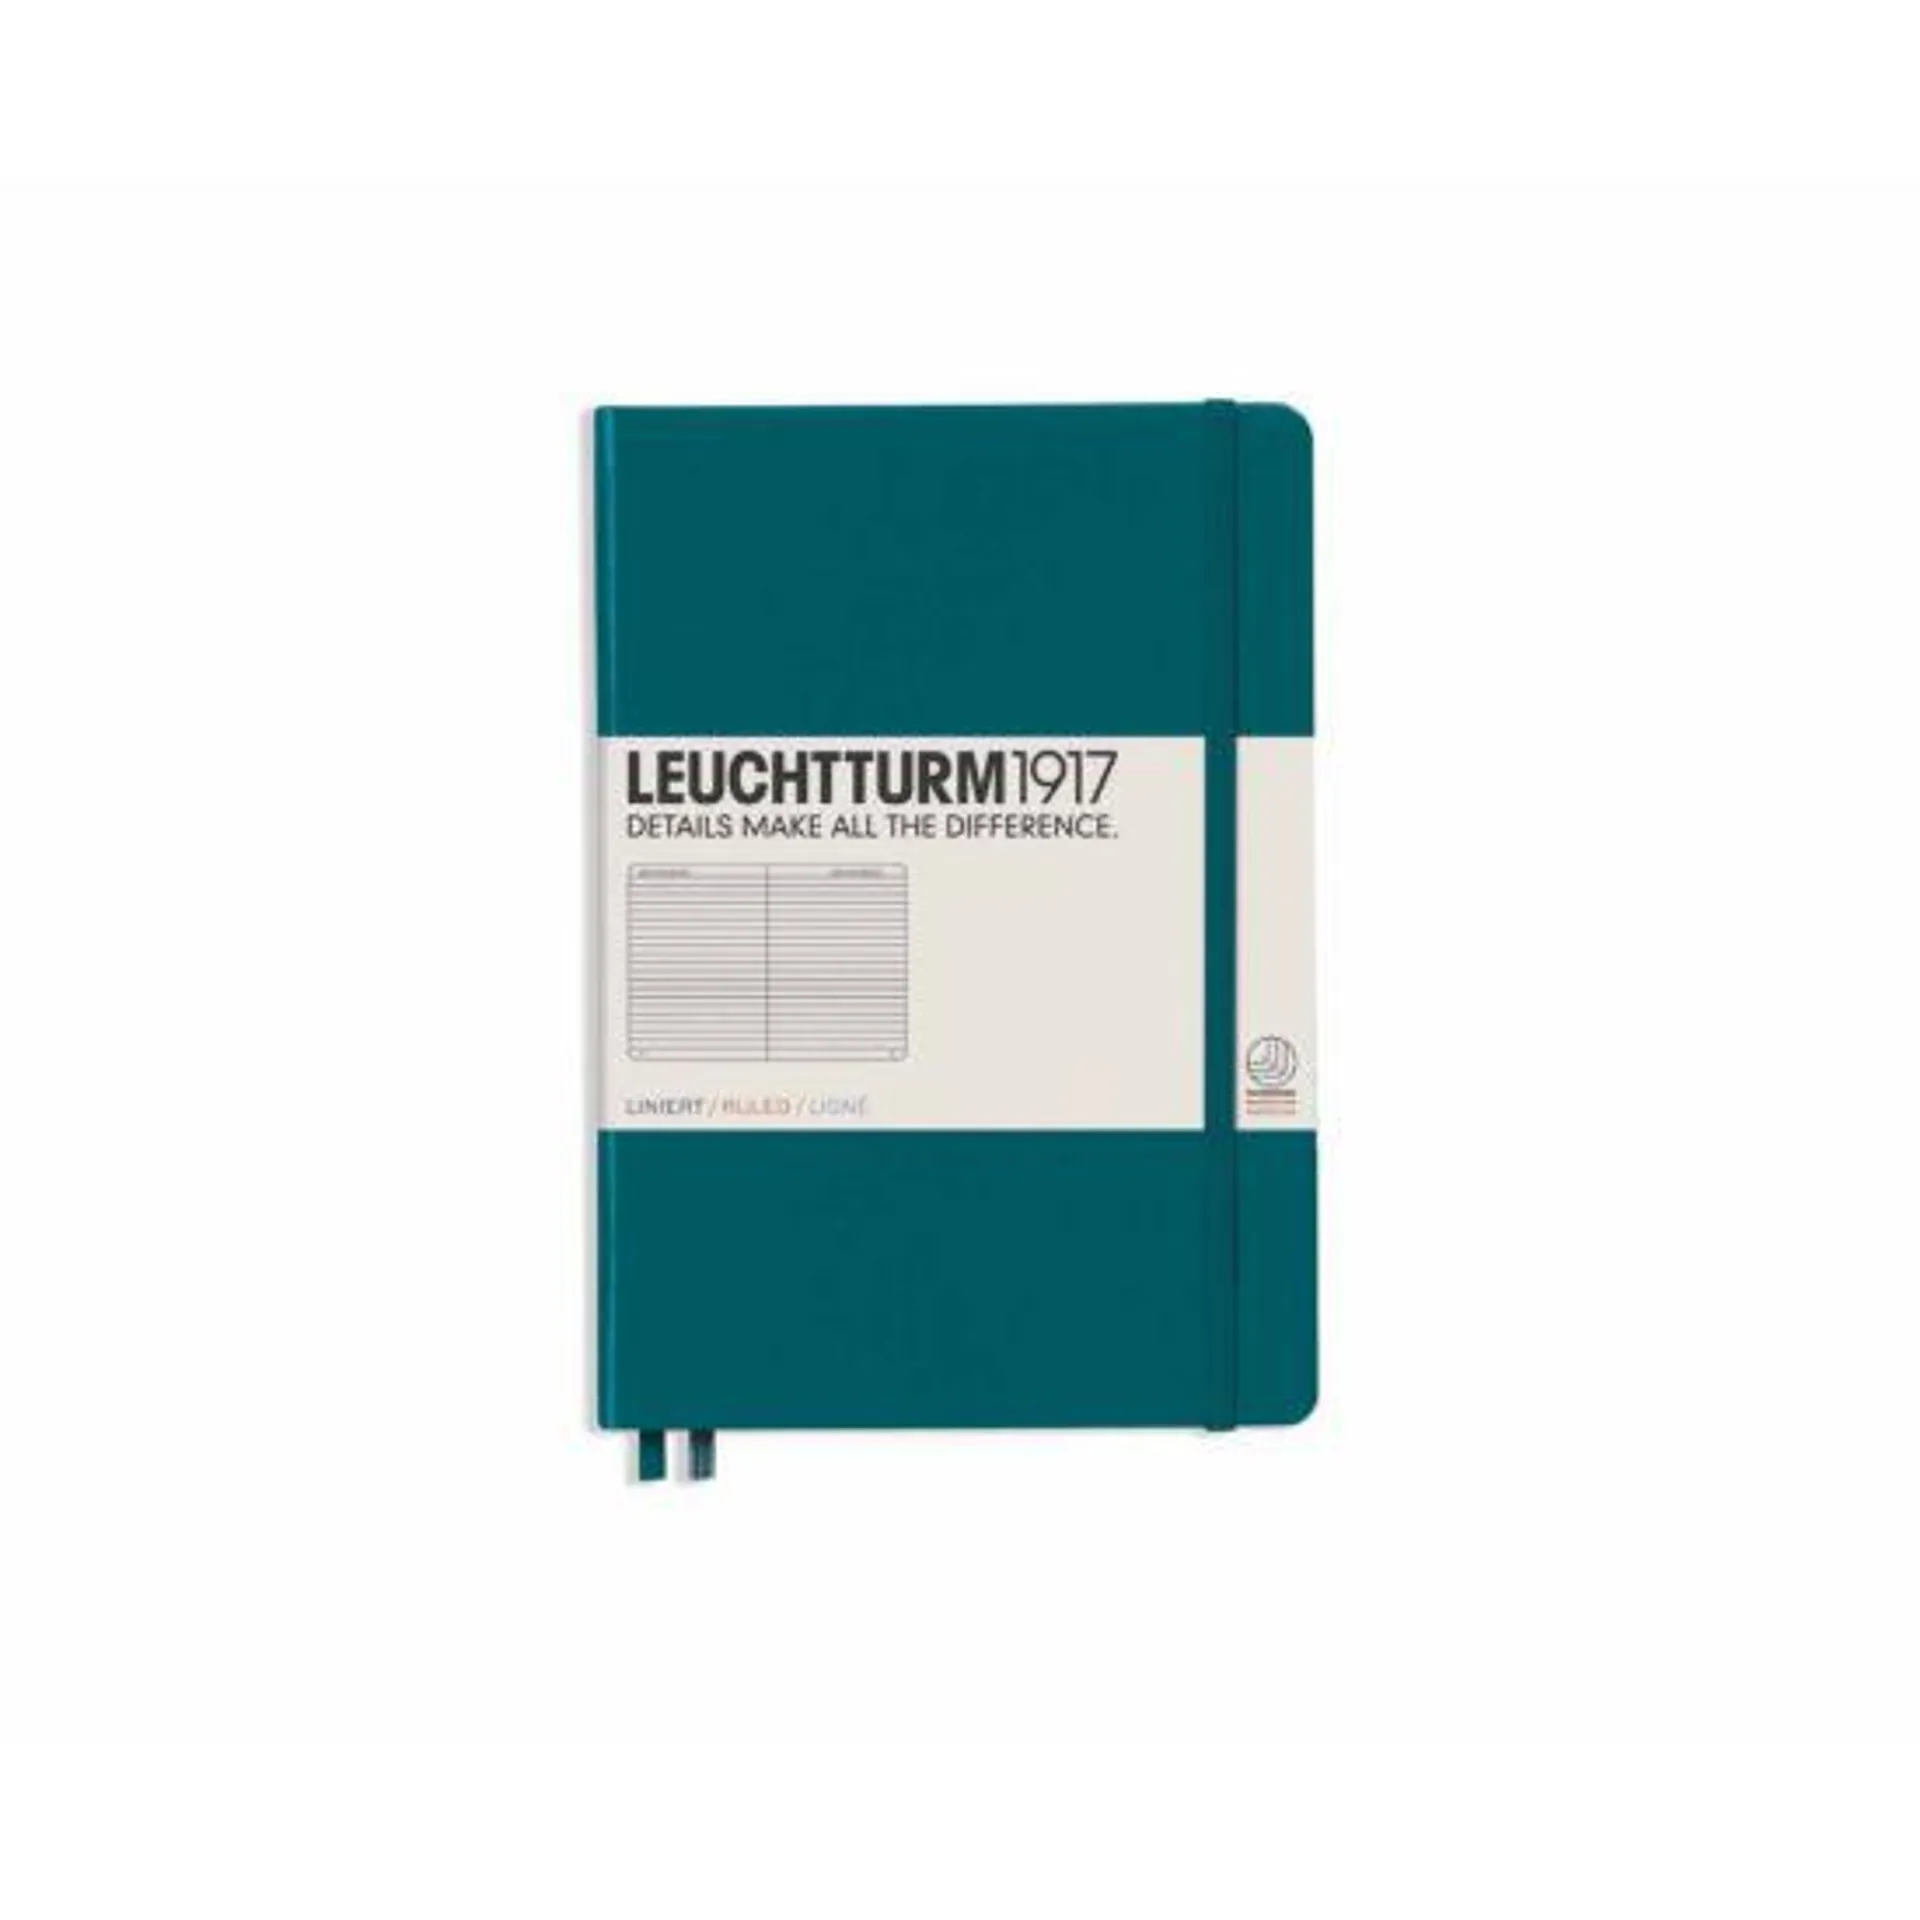 Leuchtturm1917 Hardcover Notebook Ruled A5